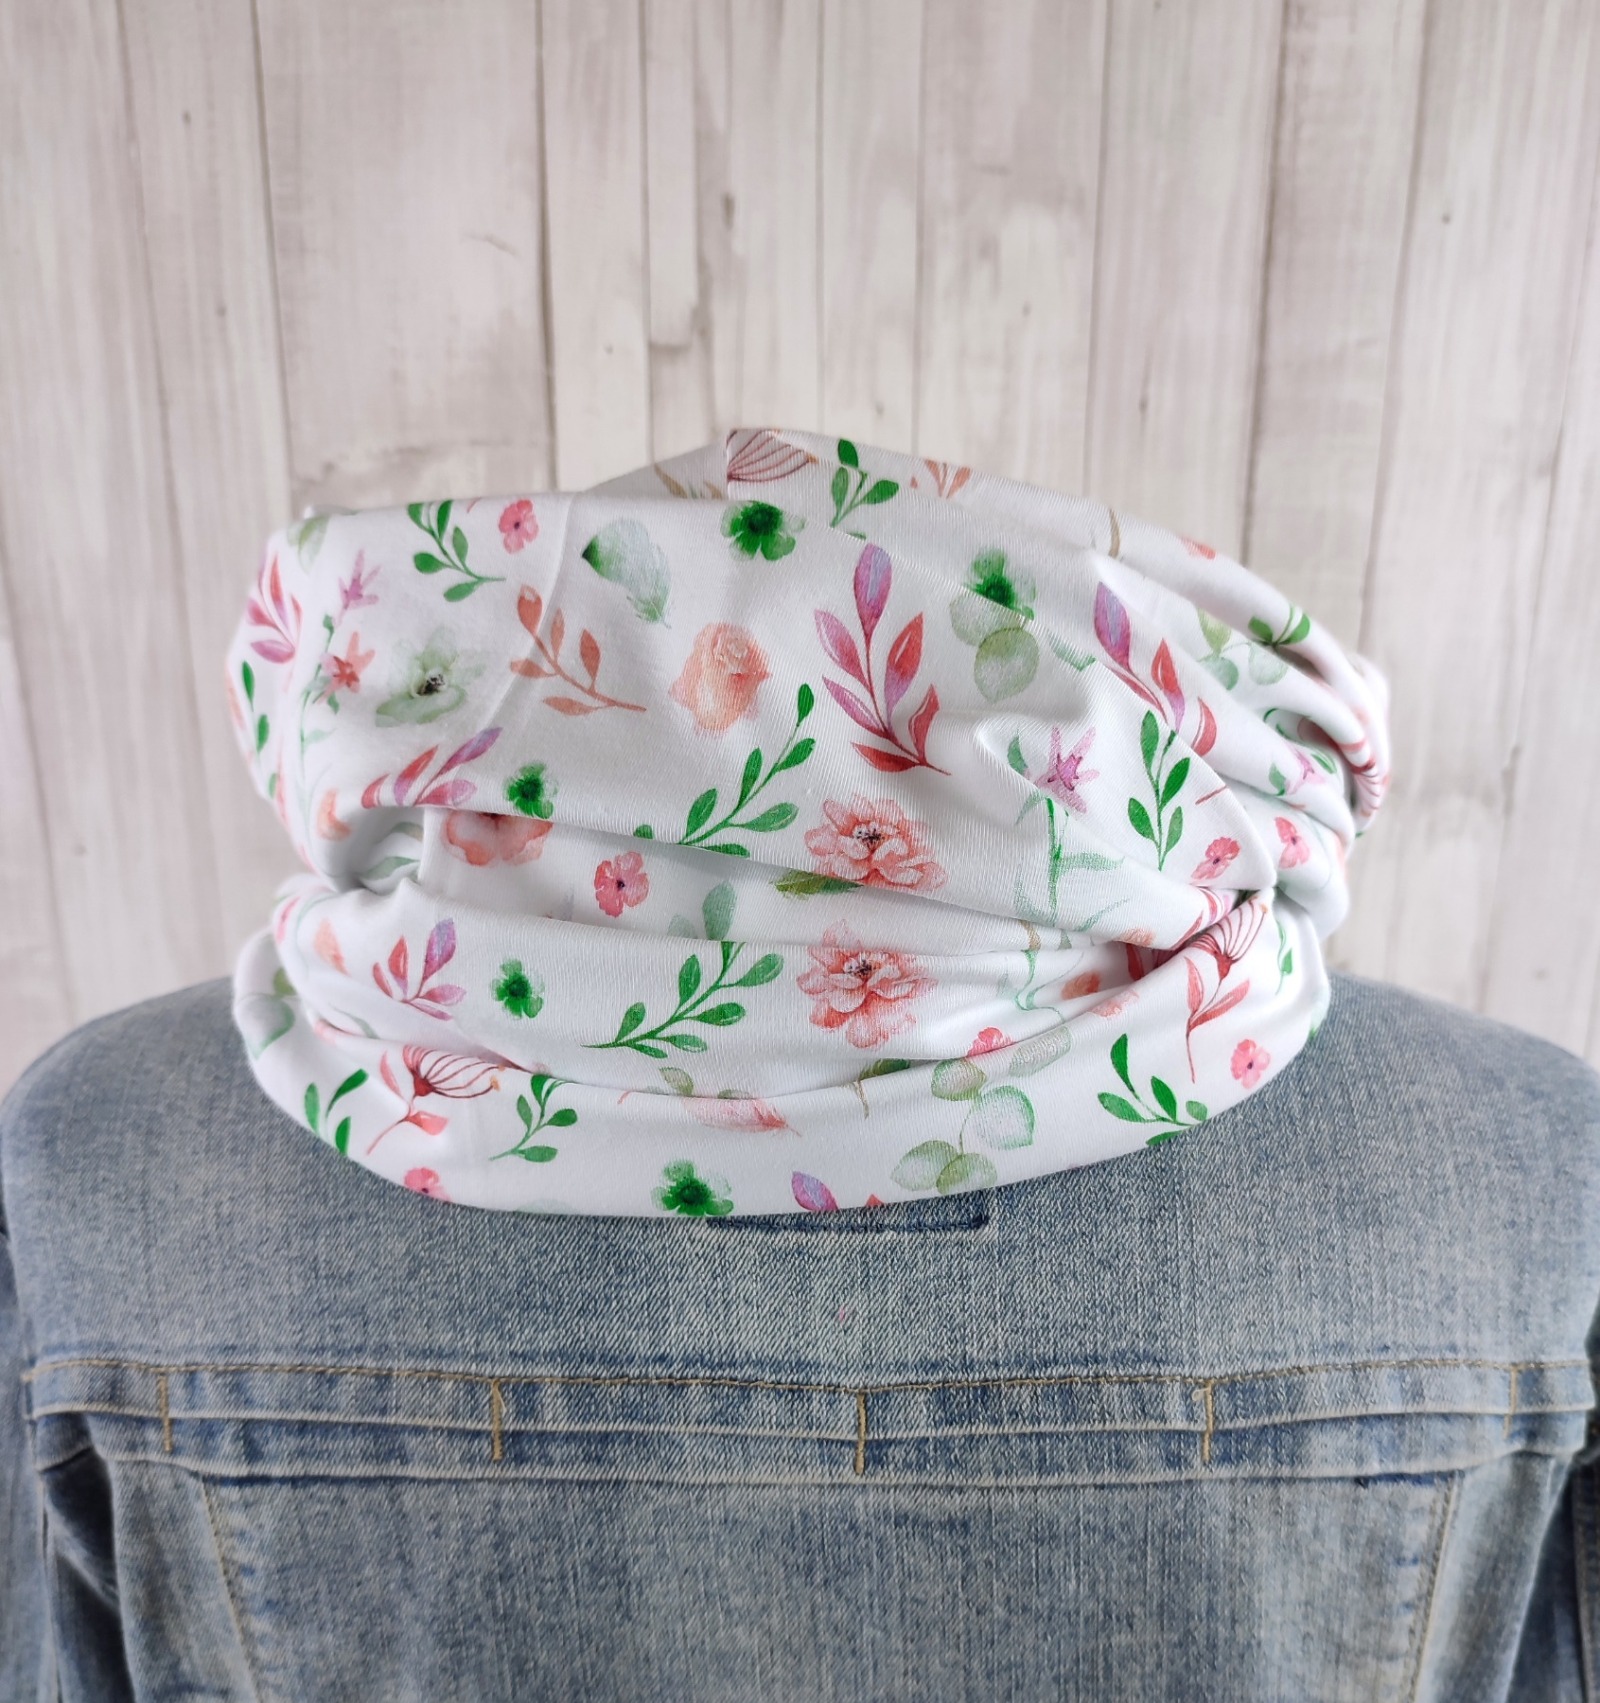 Loop Schlauchschal weiß mit kleinem Blumenmuster in lachsrosa und grün - Schal für Damen aus Jersey 3